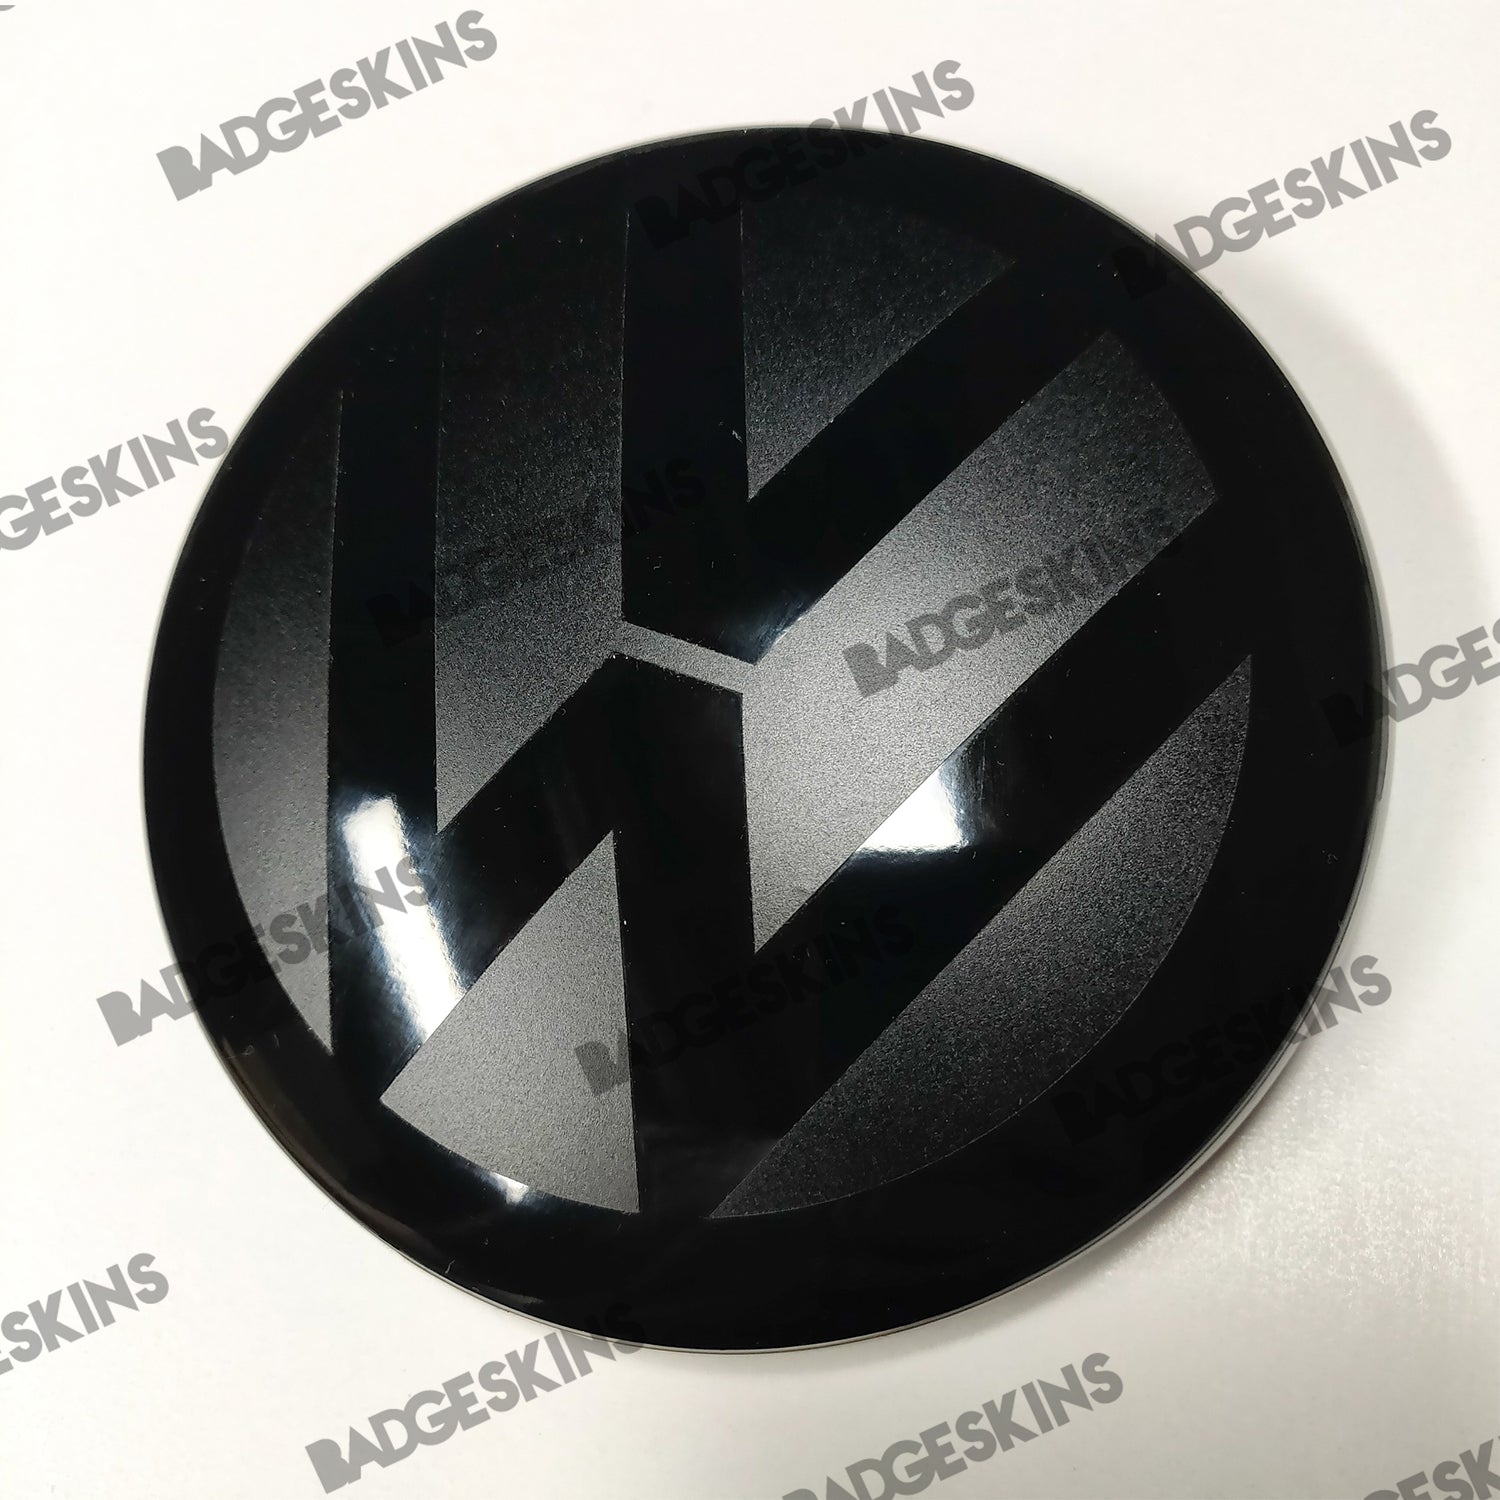 VW - T-Roc - Front Smooth VW Emblem Overlay – Badgeskins